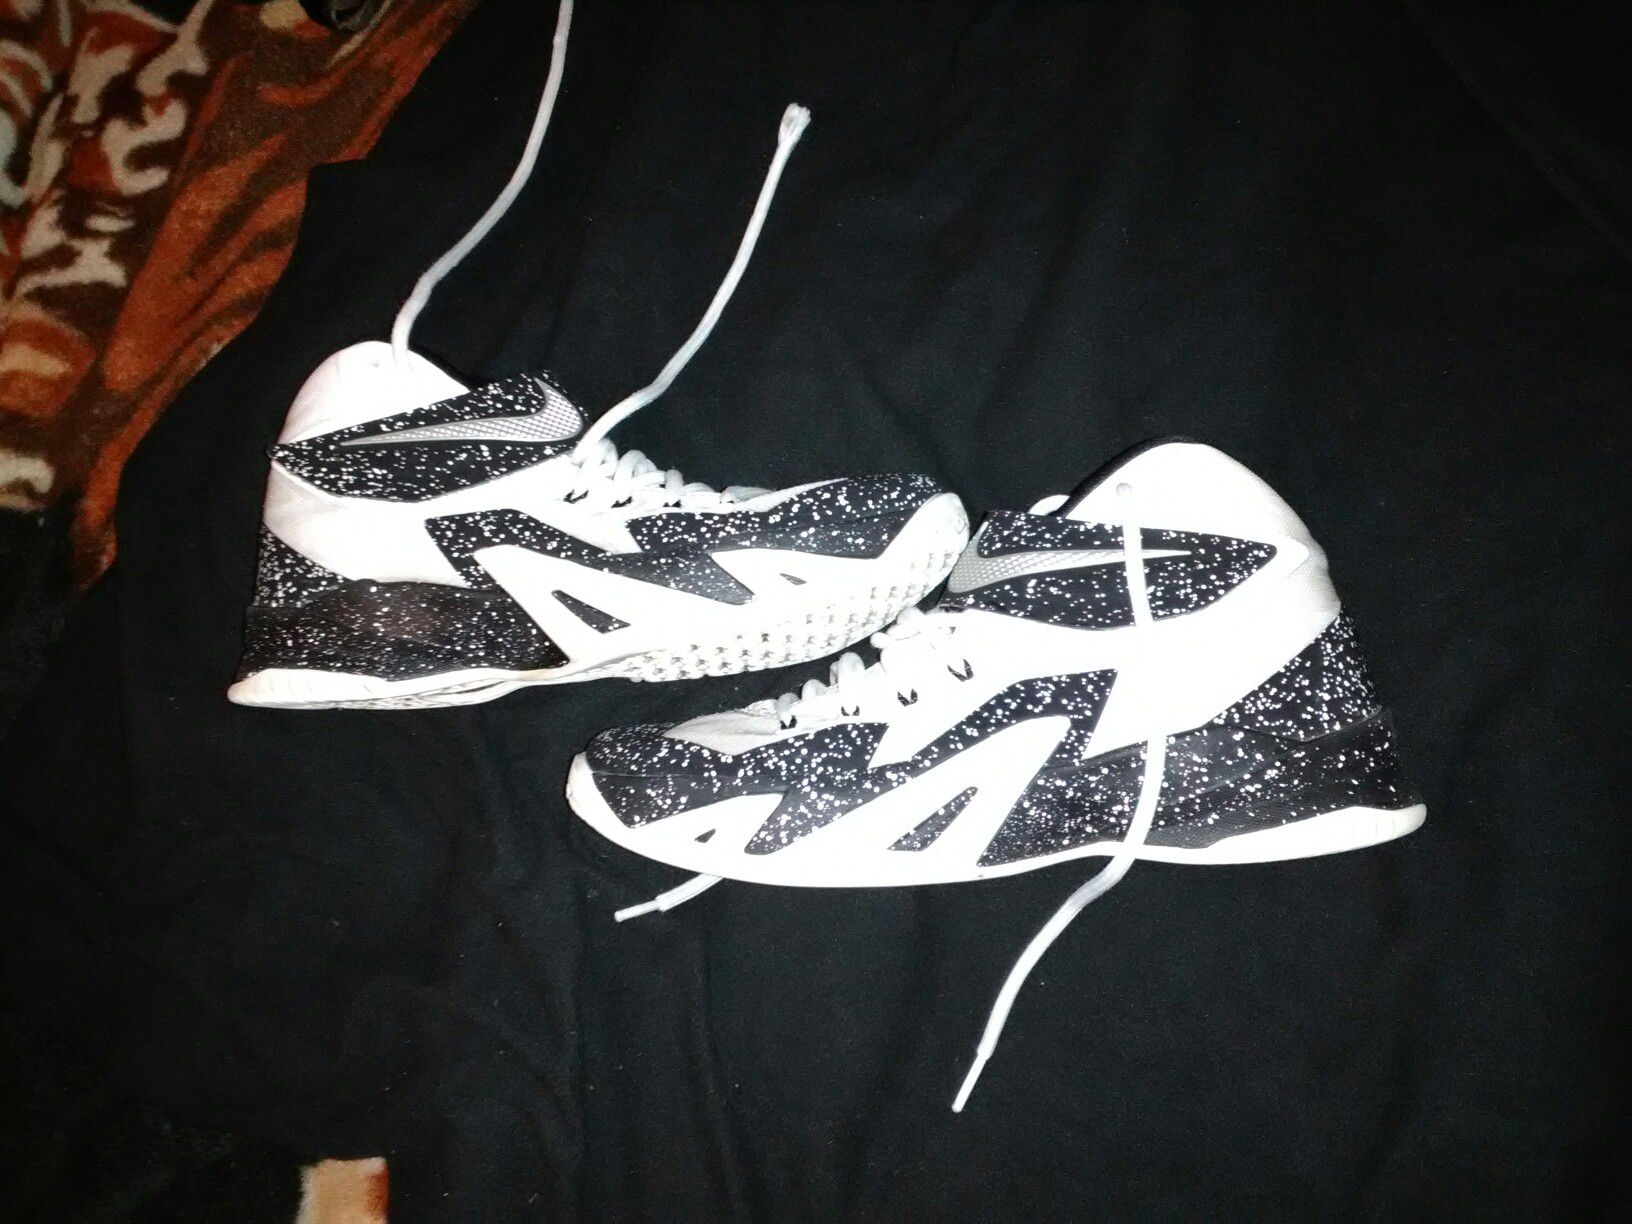 086 - Purchase Virgil Abloh x Nike Мужские кроссовки nike air